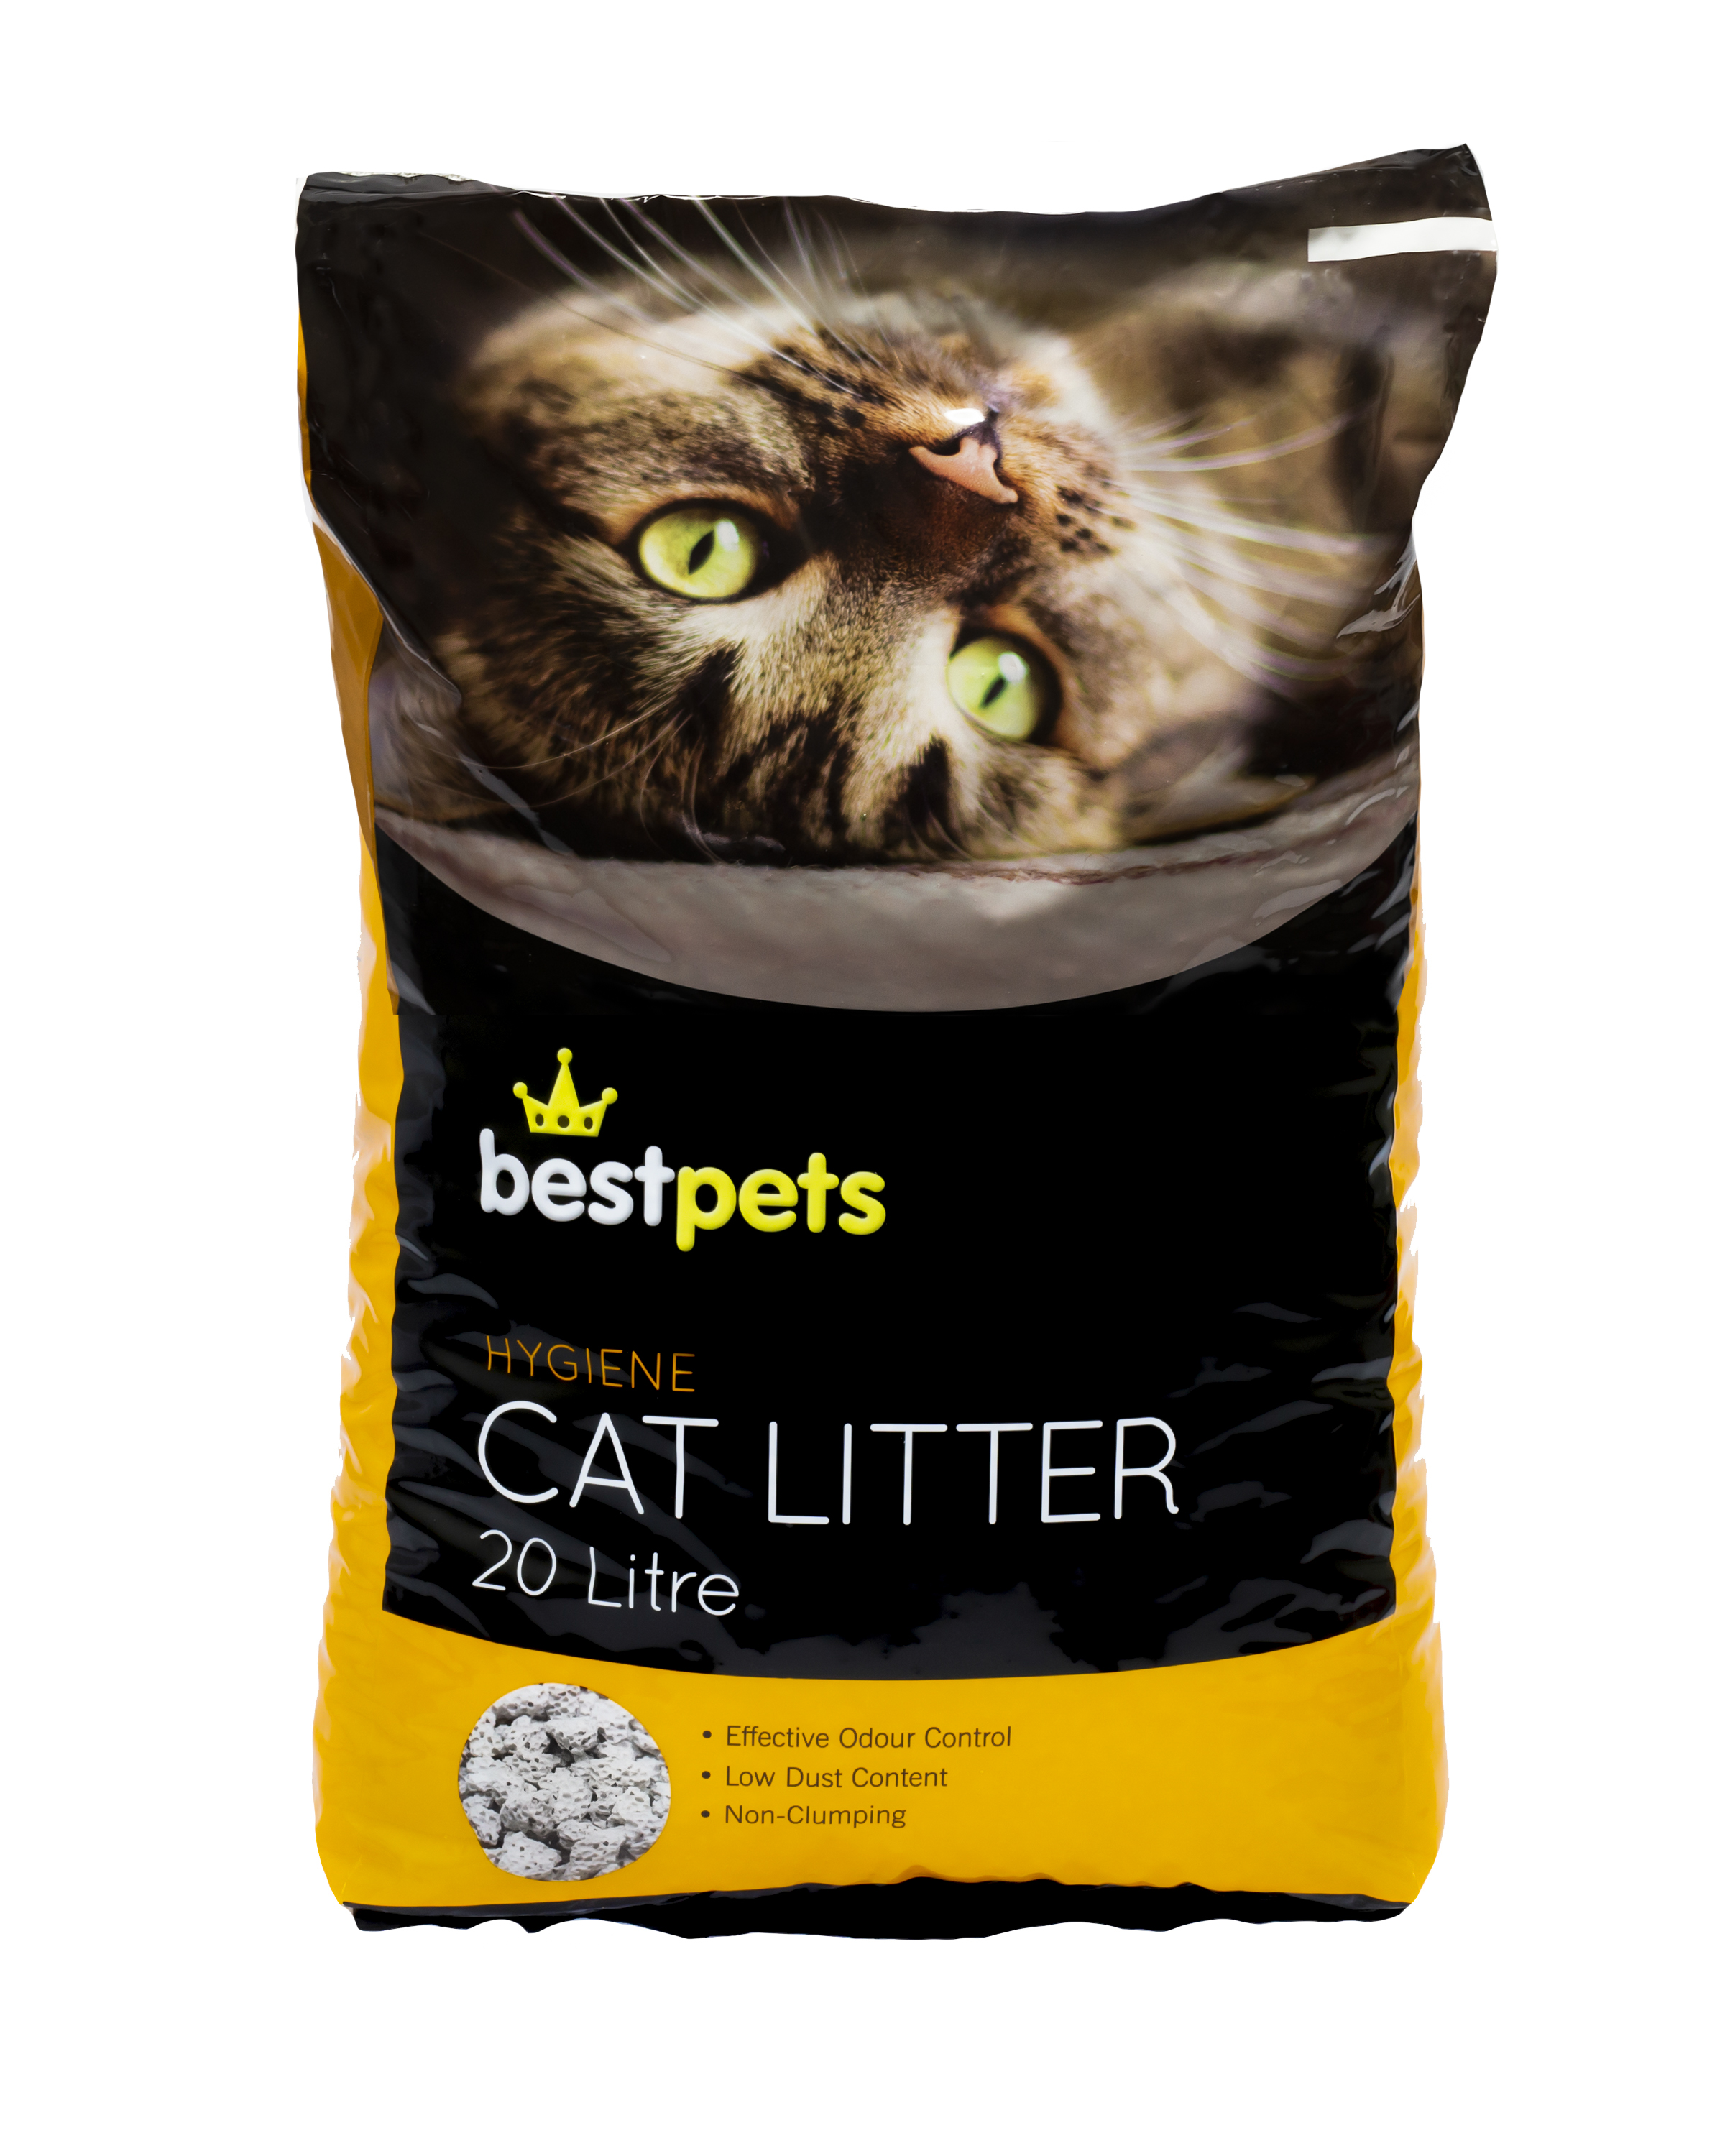 NEW! Bestpets Hygiene Cat Litter